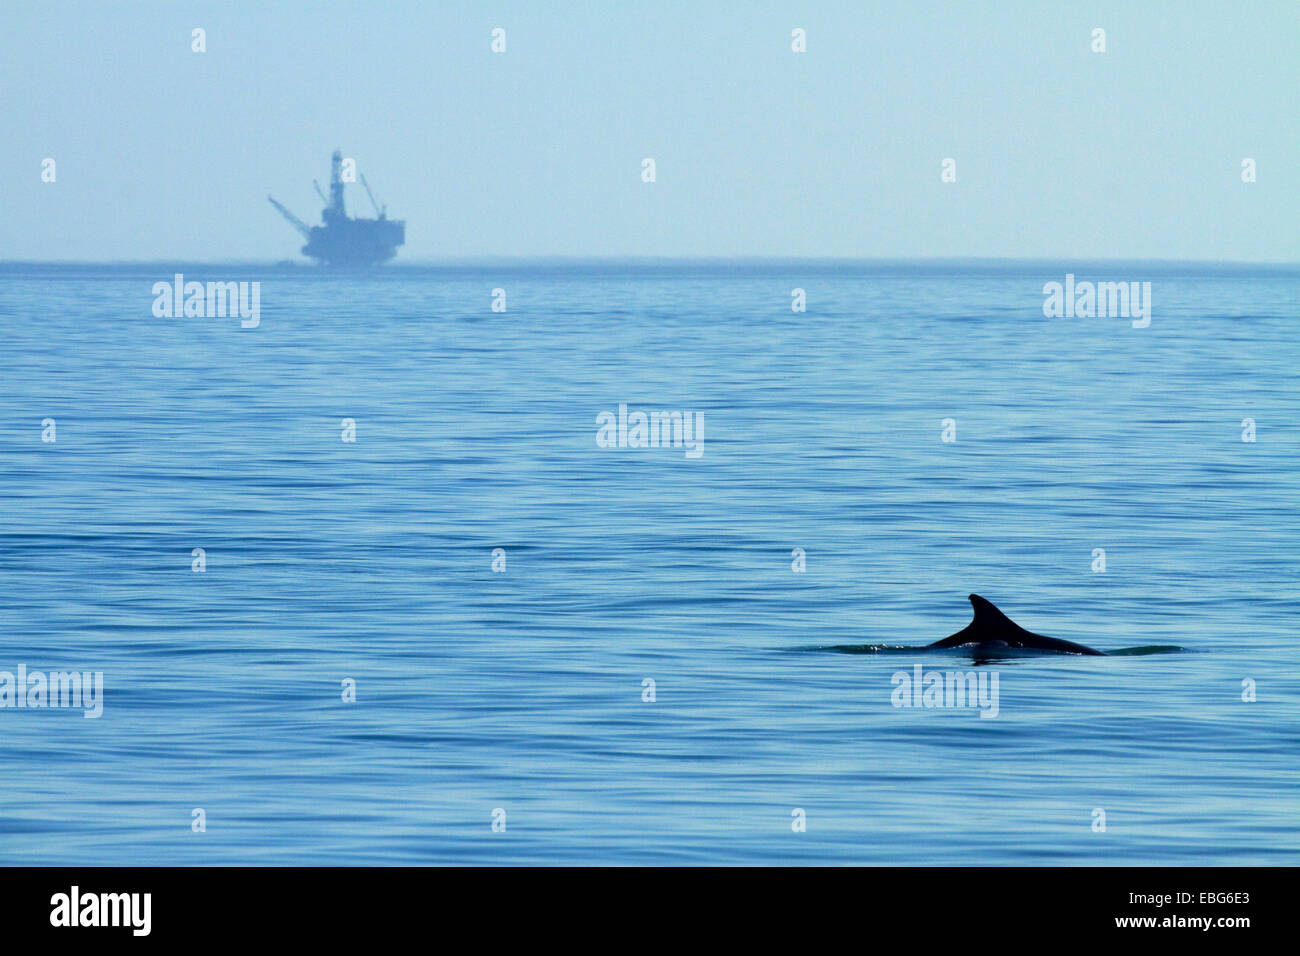 Delfines y de la plataforma petrolífera, el Capitan State Beach, el condado de Santa Bárbara, Central Coast, California, EE.UU. Foto de stock